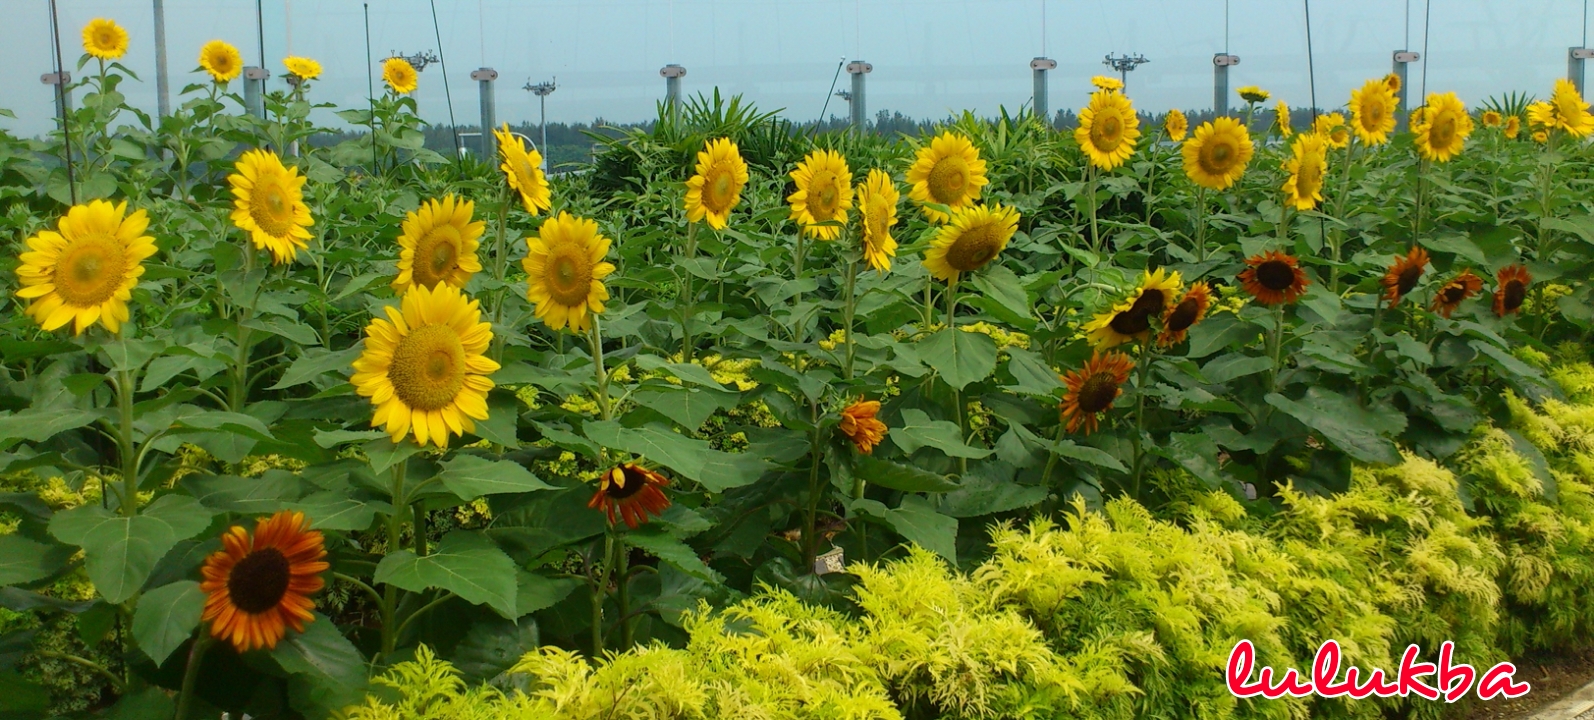 My Journey My Destiny Menikmati kebun bunga matahari di 